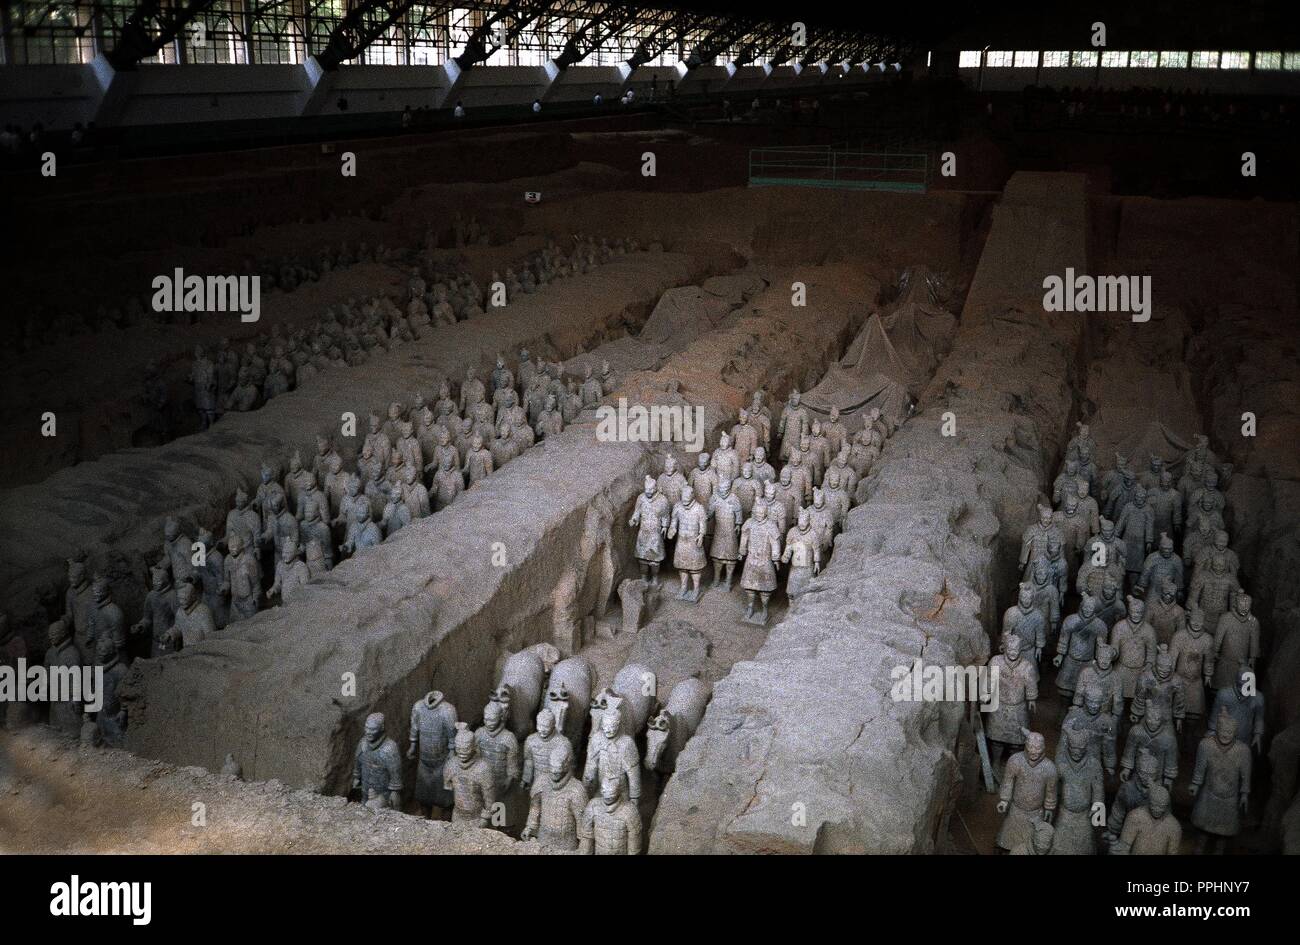 ESCULTURA-EJERCITO DE color terracotta-S III AC-DINASTIA QUIN. Posizione: MAUSOLEO DE Qin Shi Huang. Foto Stock